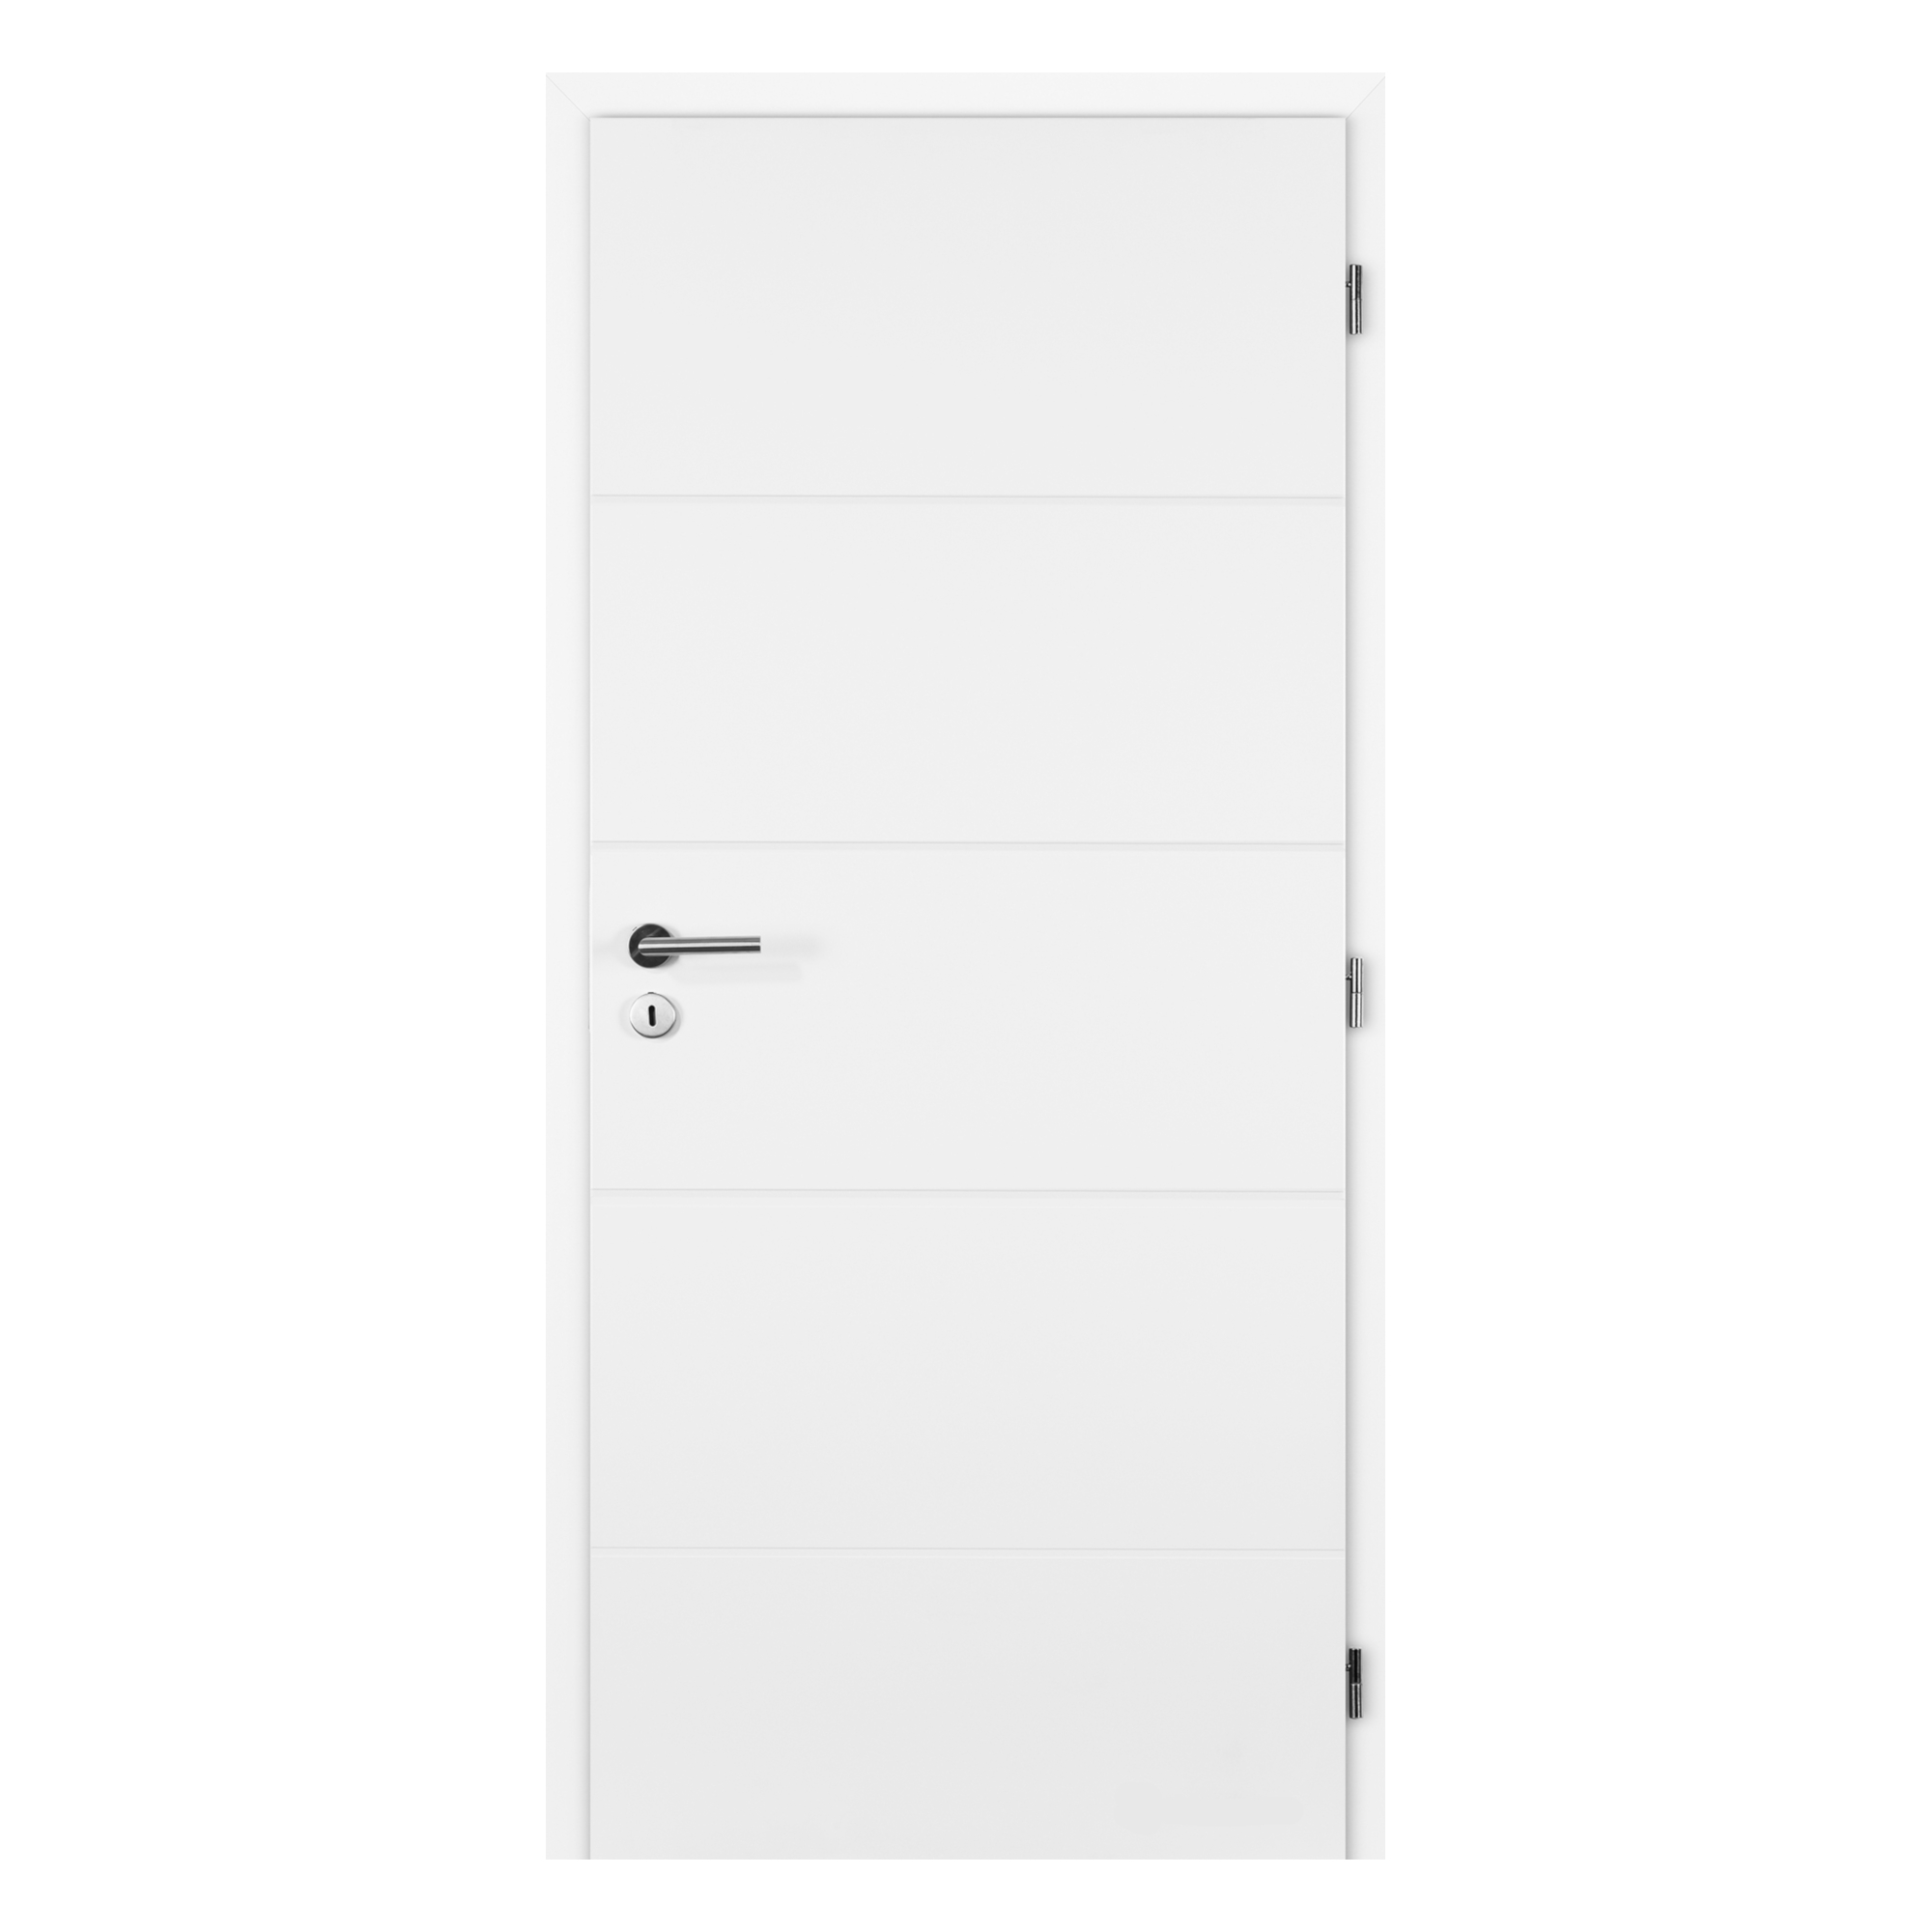 Dveře plné profilované Doornite Quatro bílé pravé 800 mm